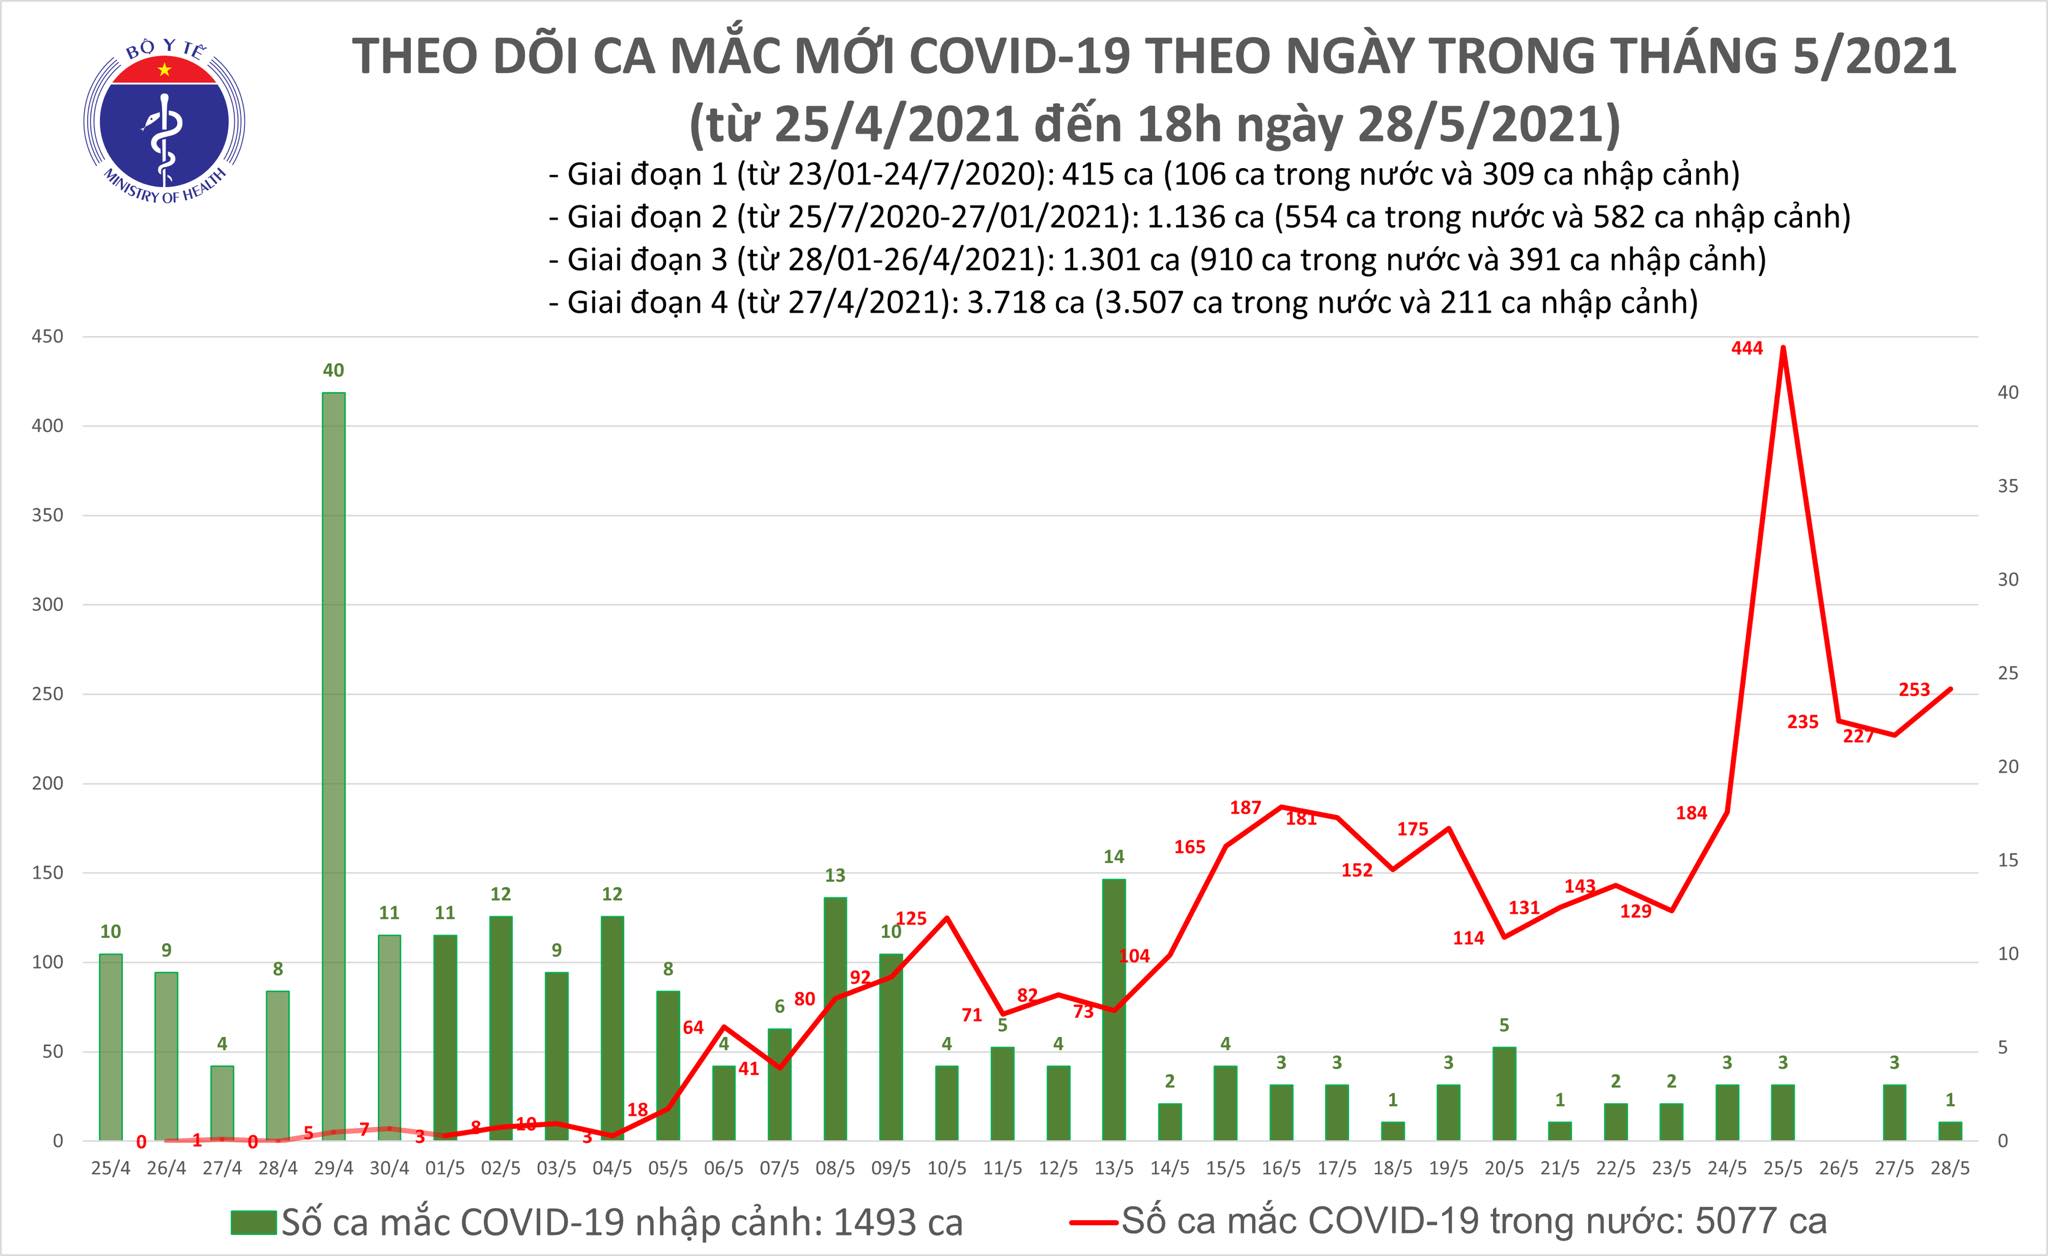 Tối 28/5: Thêm 173 ca mắc COVID-19 trong nước, Bắc Giang có 123 ca